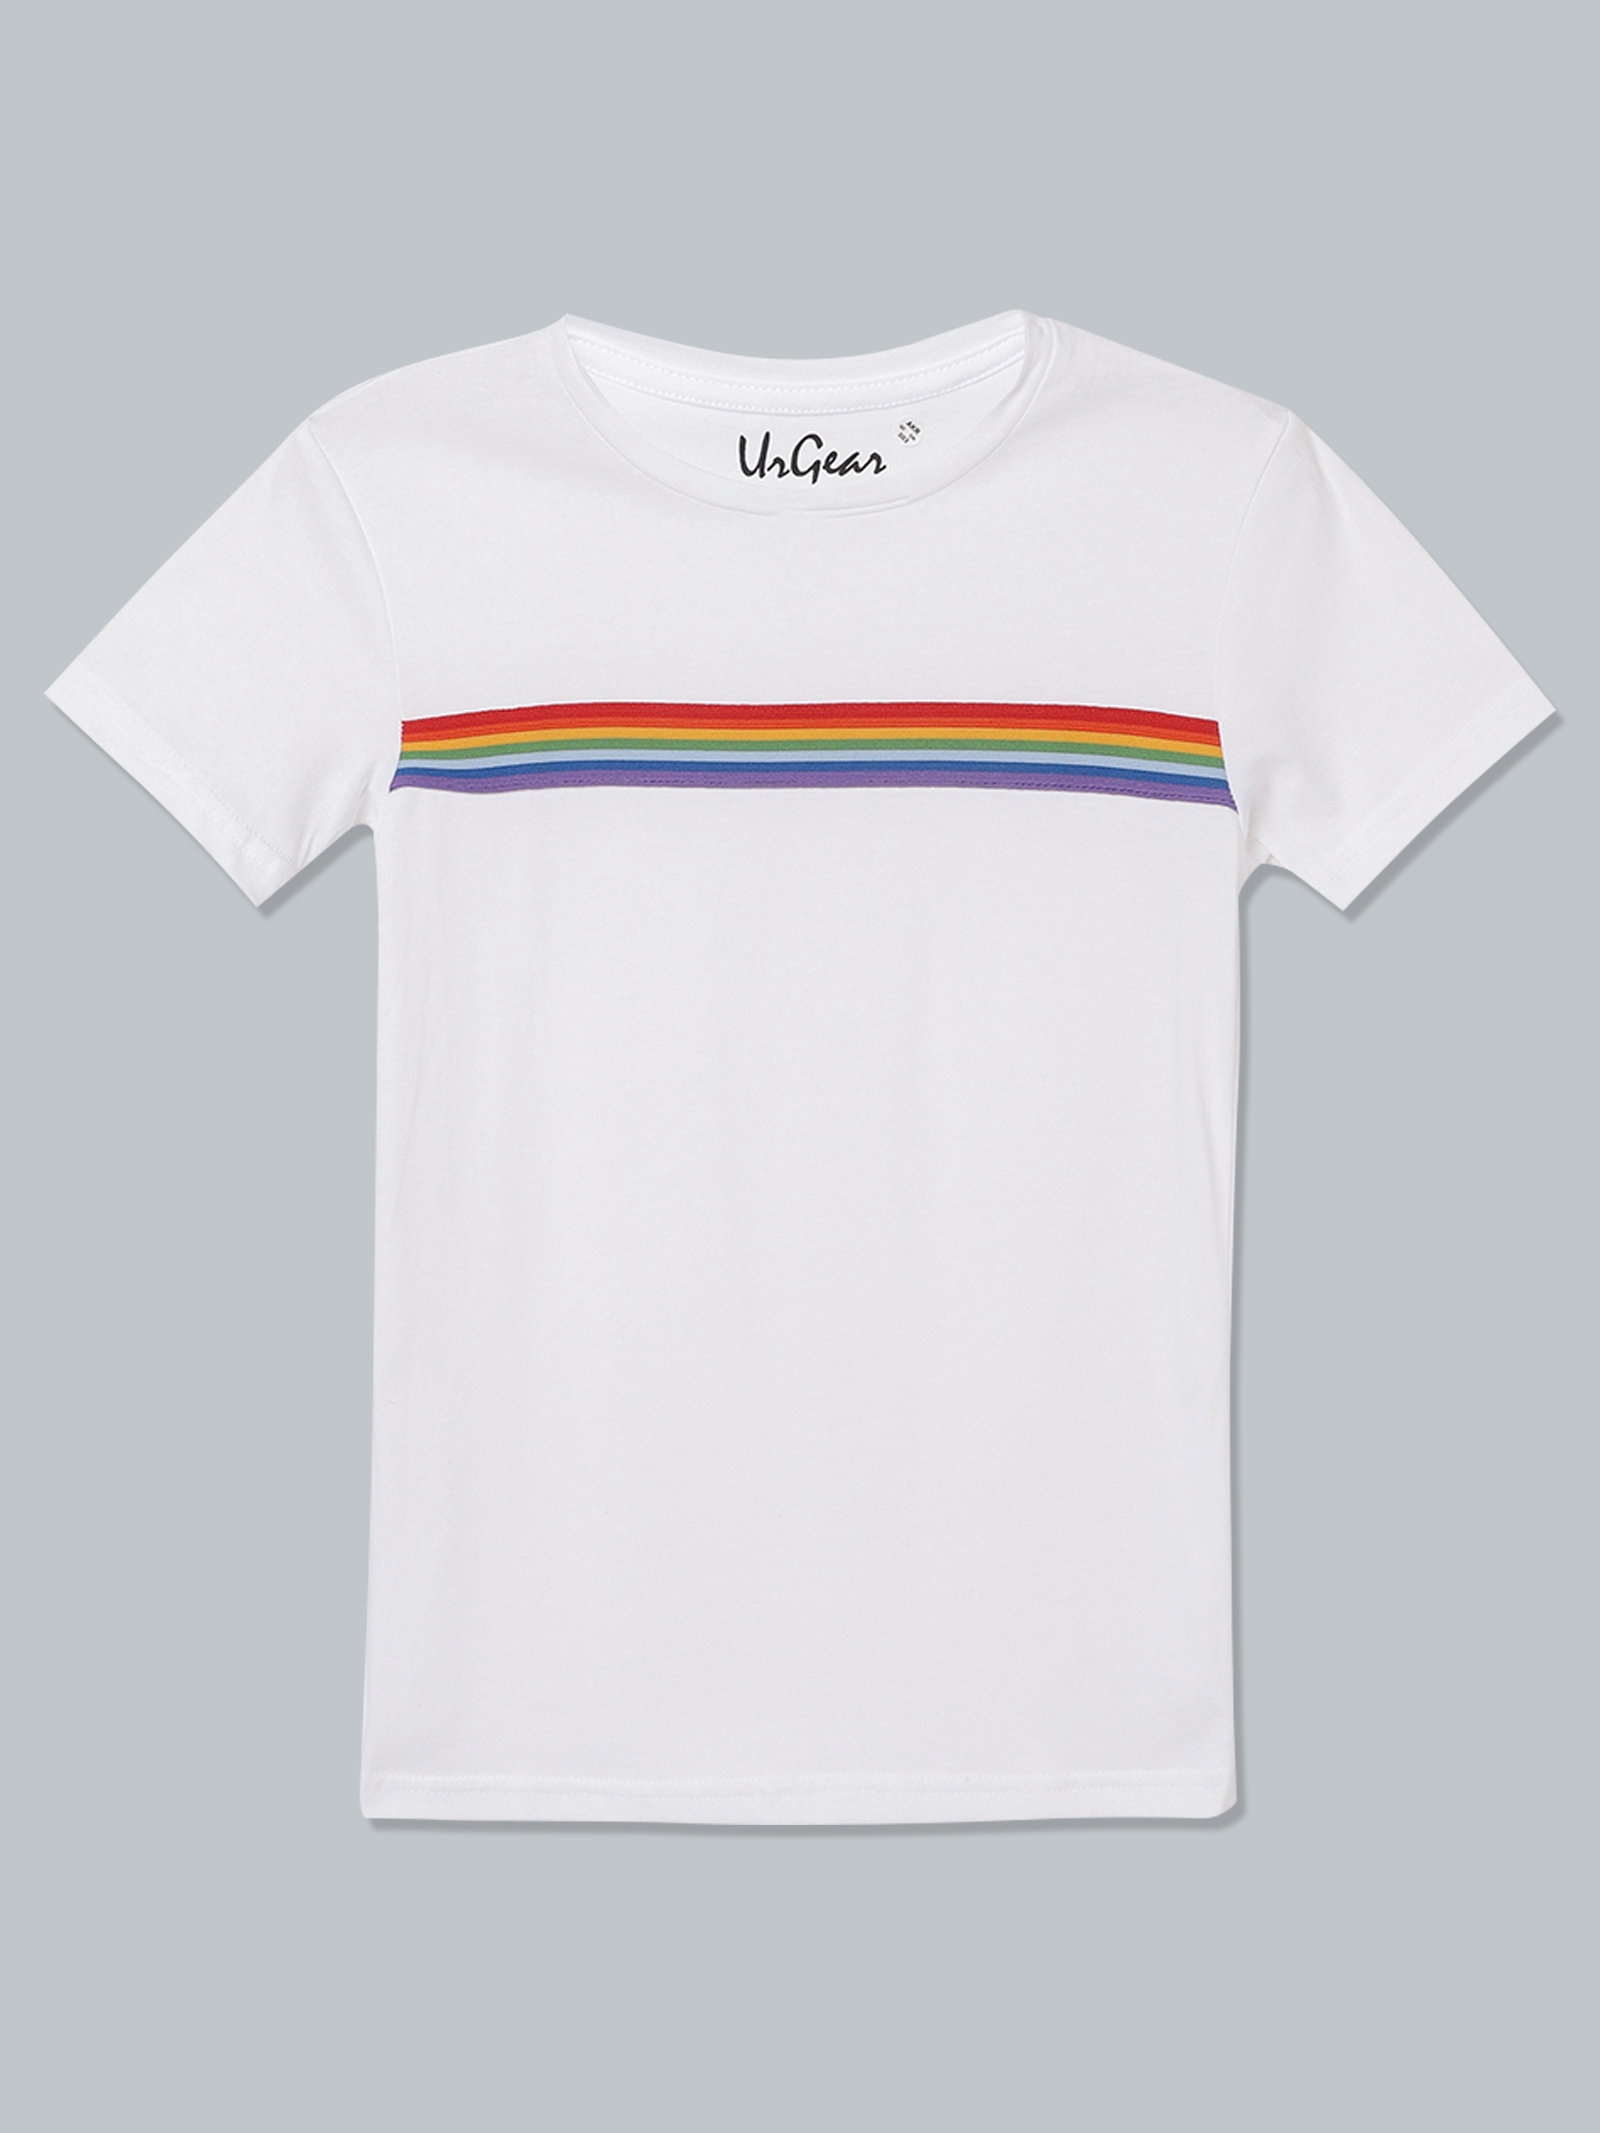 UrGear | UrGear Kids White Broad Stripes Trendy Cotton T-Shirt